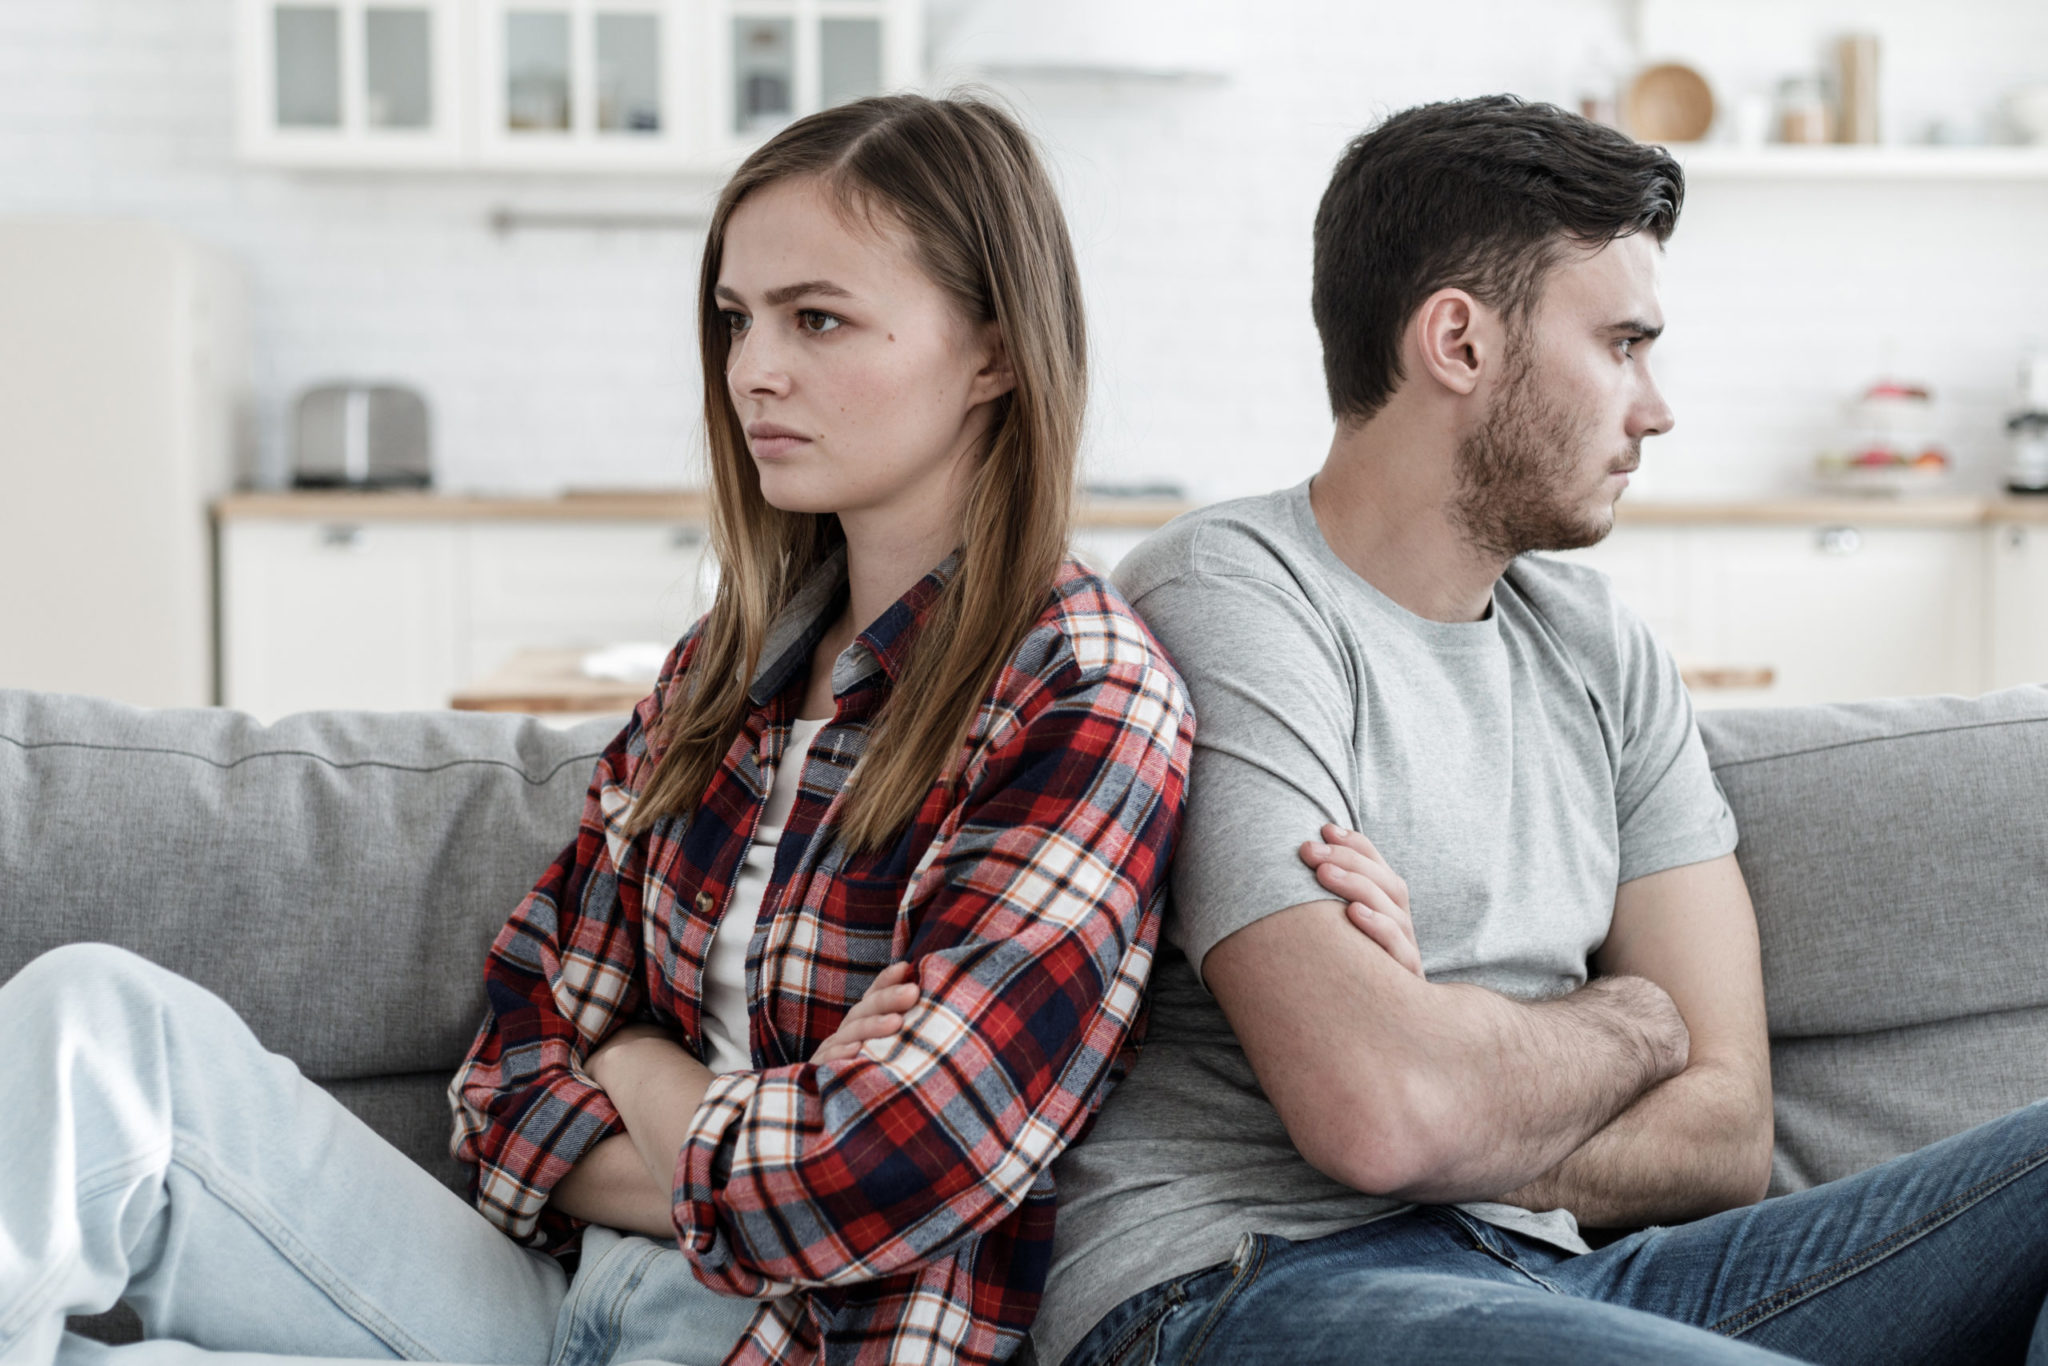 Conflits et disputes dans le couple, comment les gérer? : le